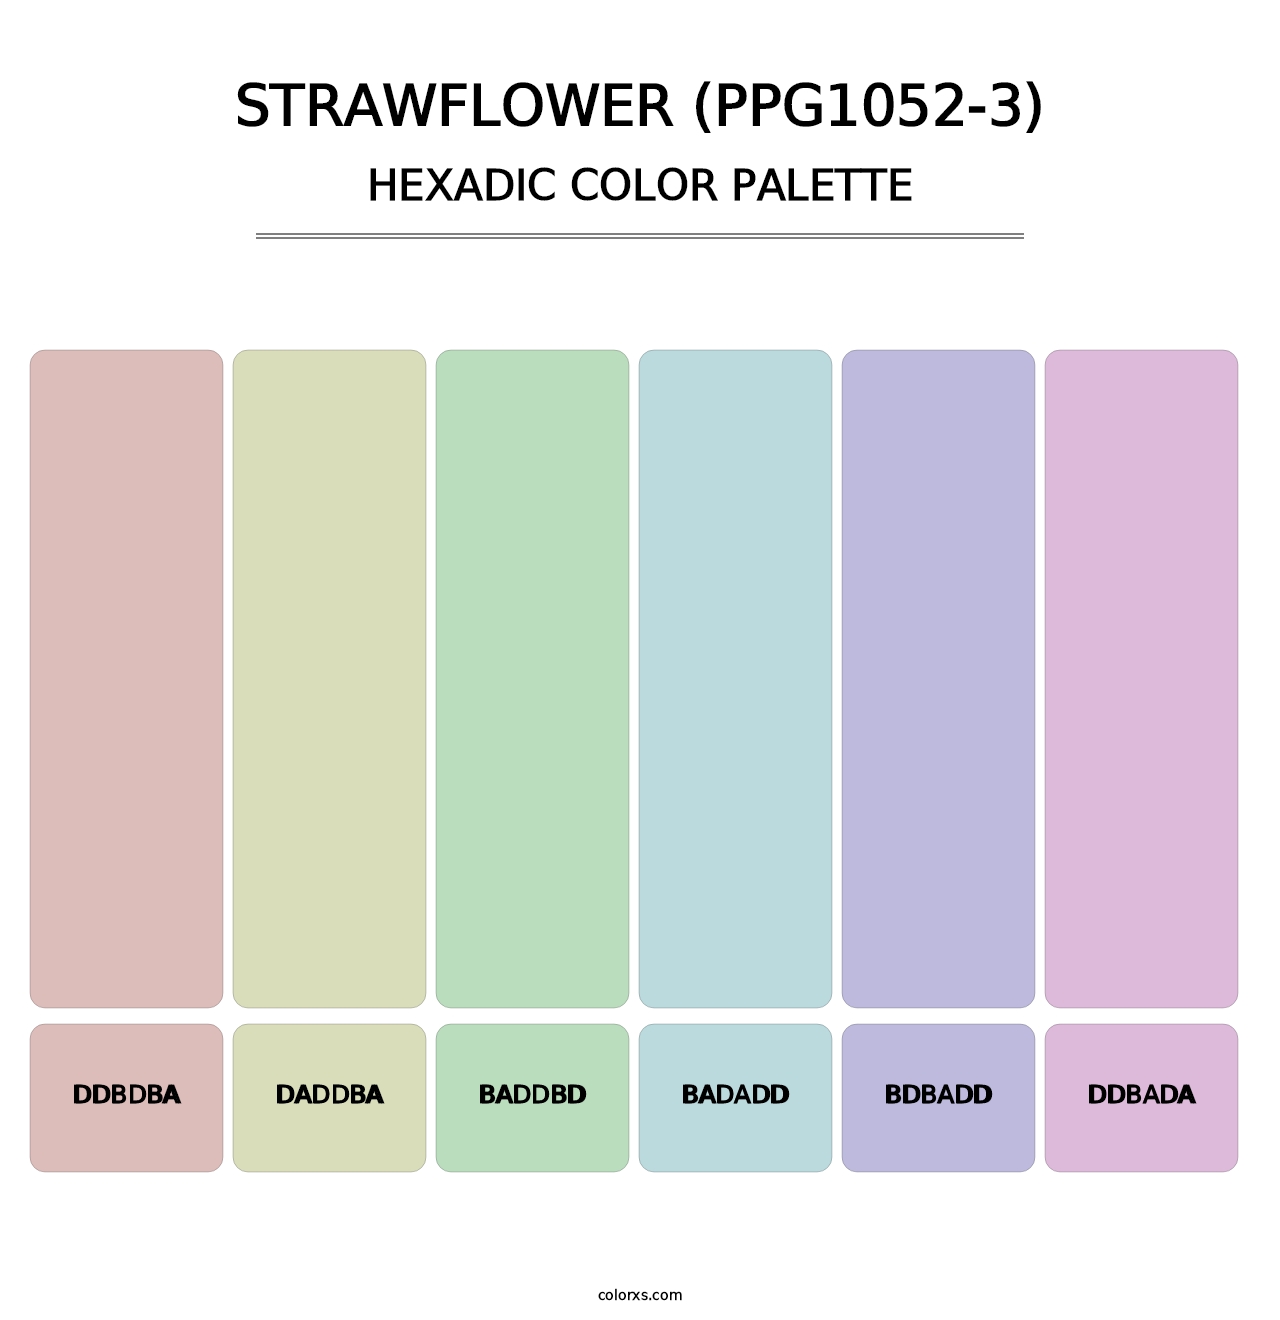 Strawflower (PPG1052-3) - Hexadic Color Palette